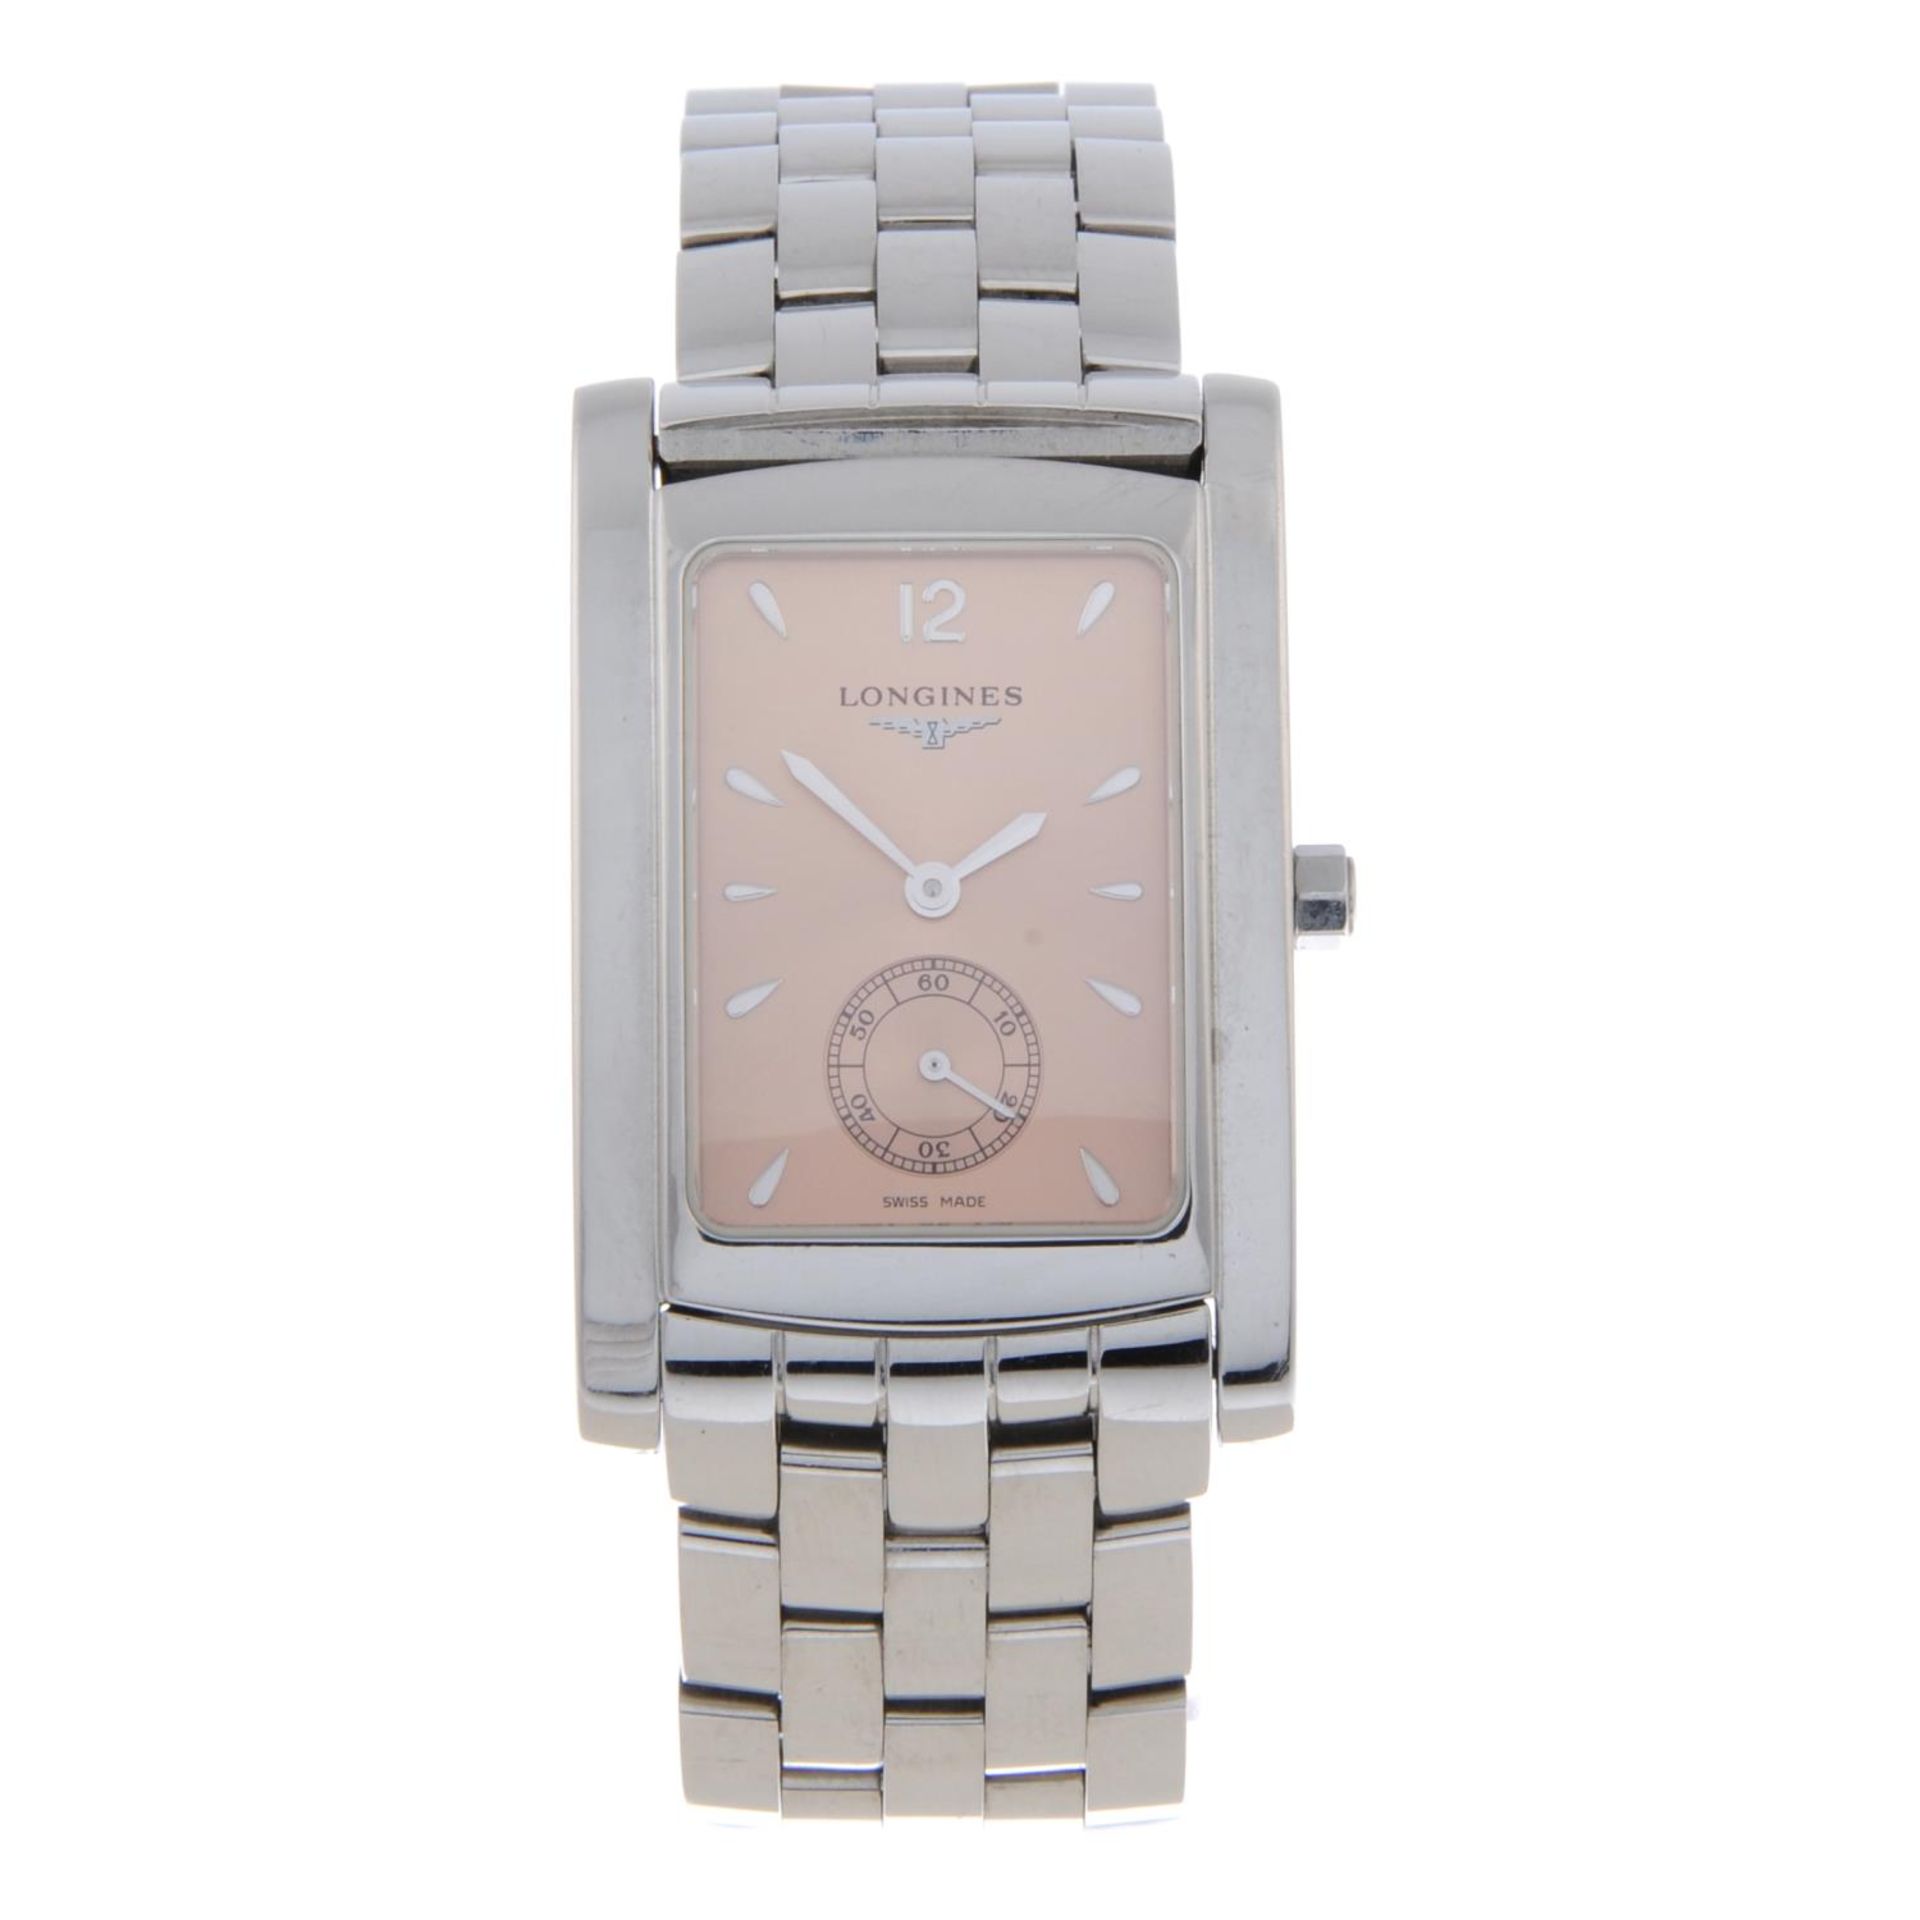 LONGINES - a mid-size DolceVita bracelet watch.